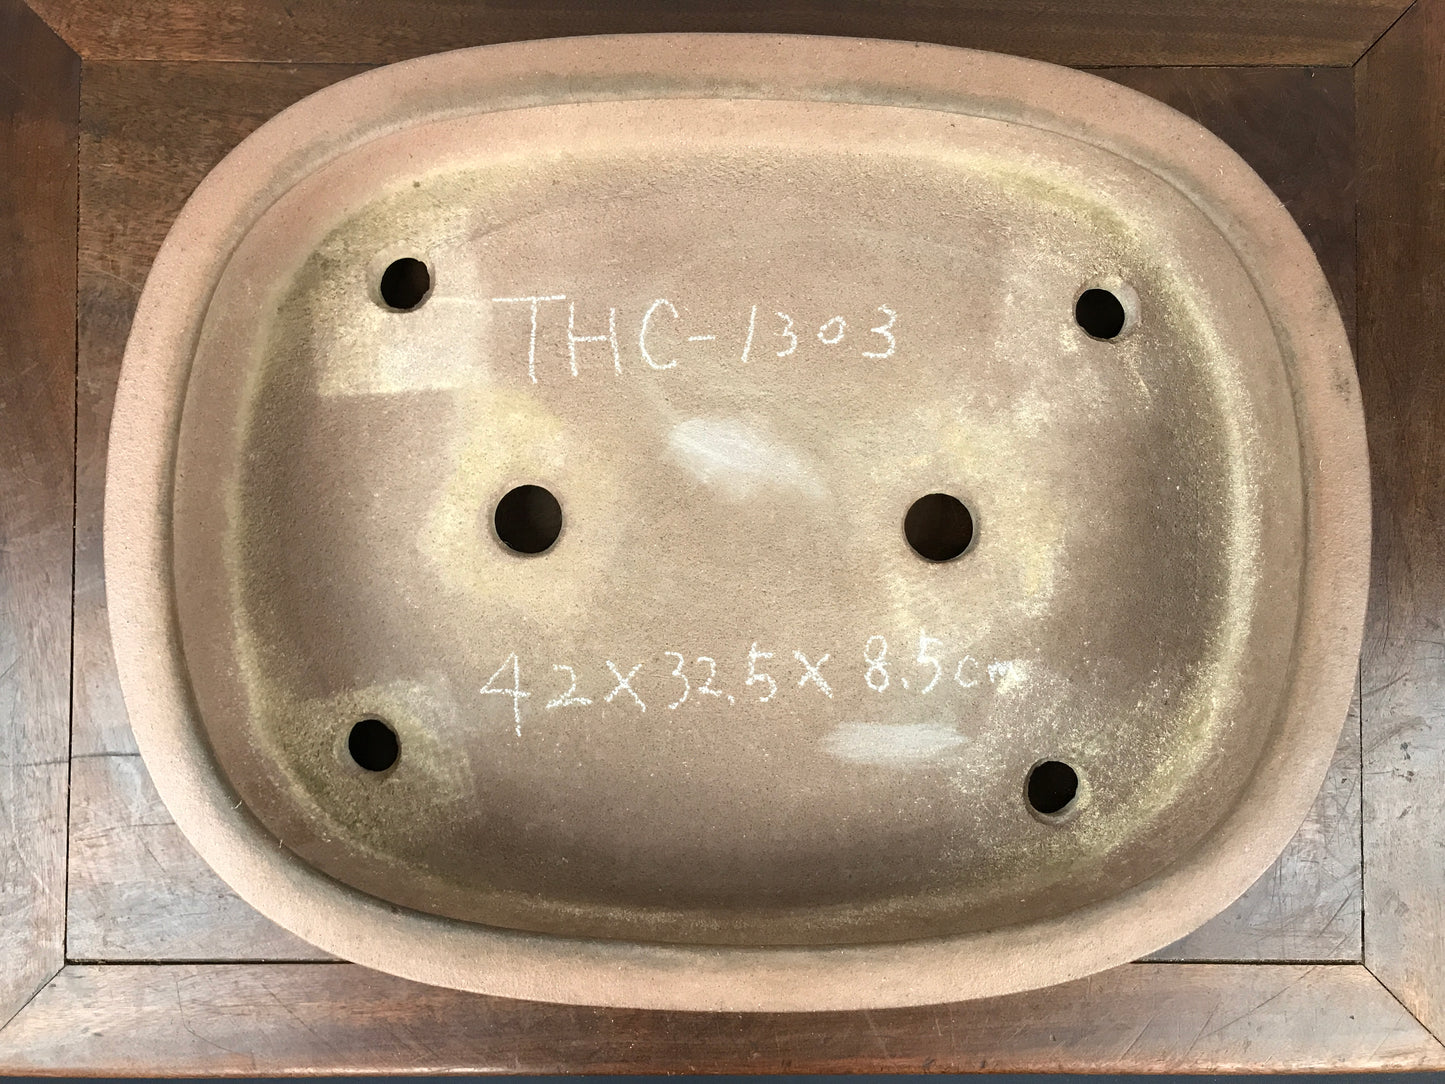 Kisen oval #THC-1303